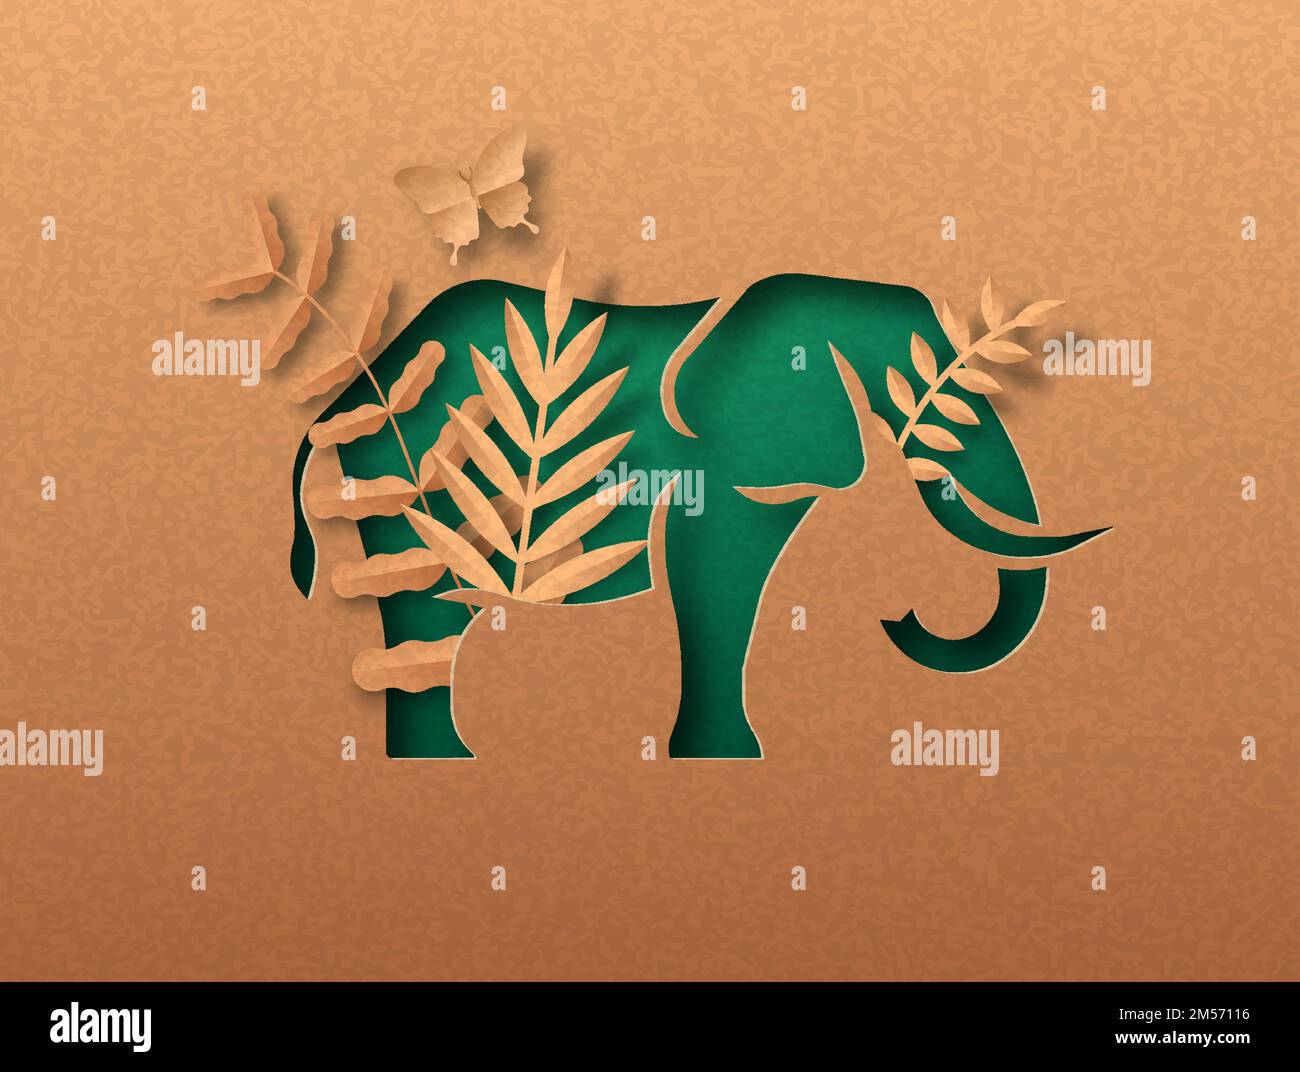 Elefant Tier grün papercut Illustration mit tropischen Pflanzen Blatt. Recycling-Papier Textur Ausschnitt Konzept für Wildlife Schutz, Anti Wilderei oder Stock Vektor